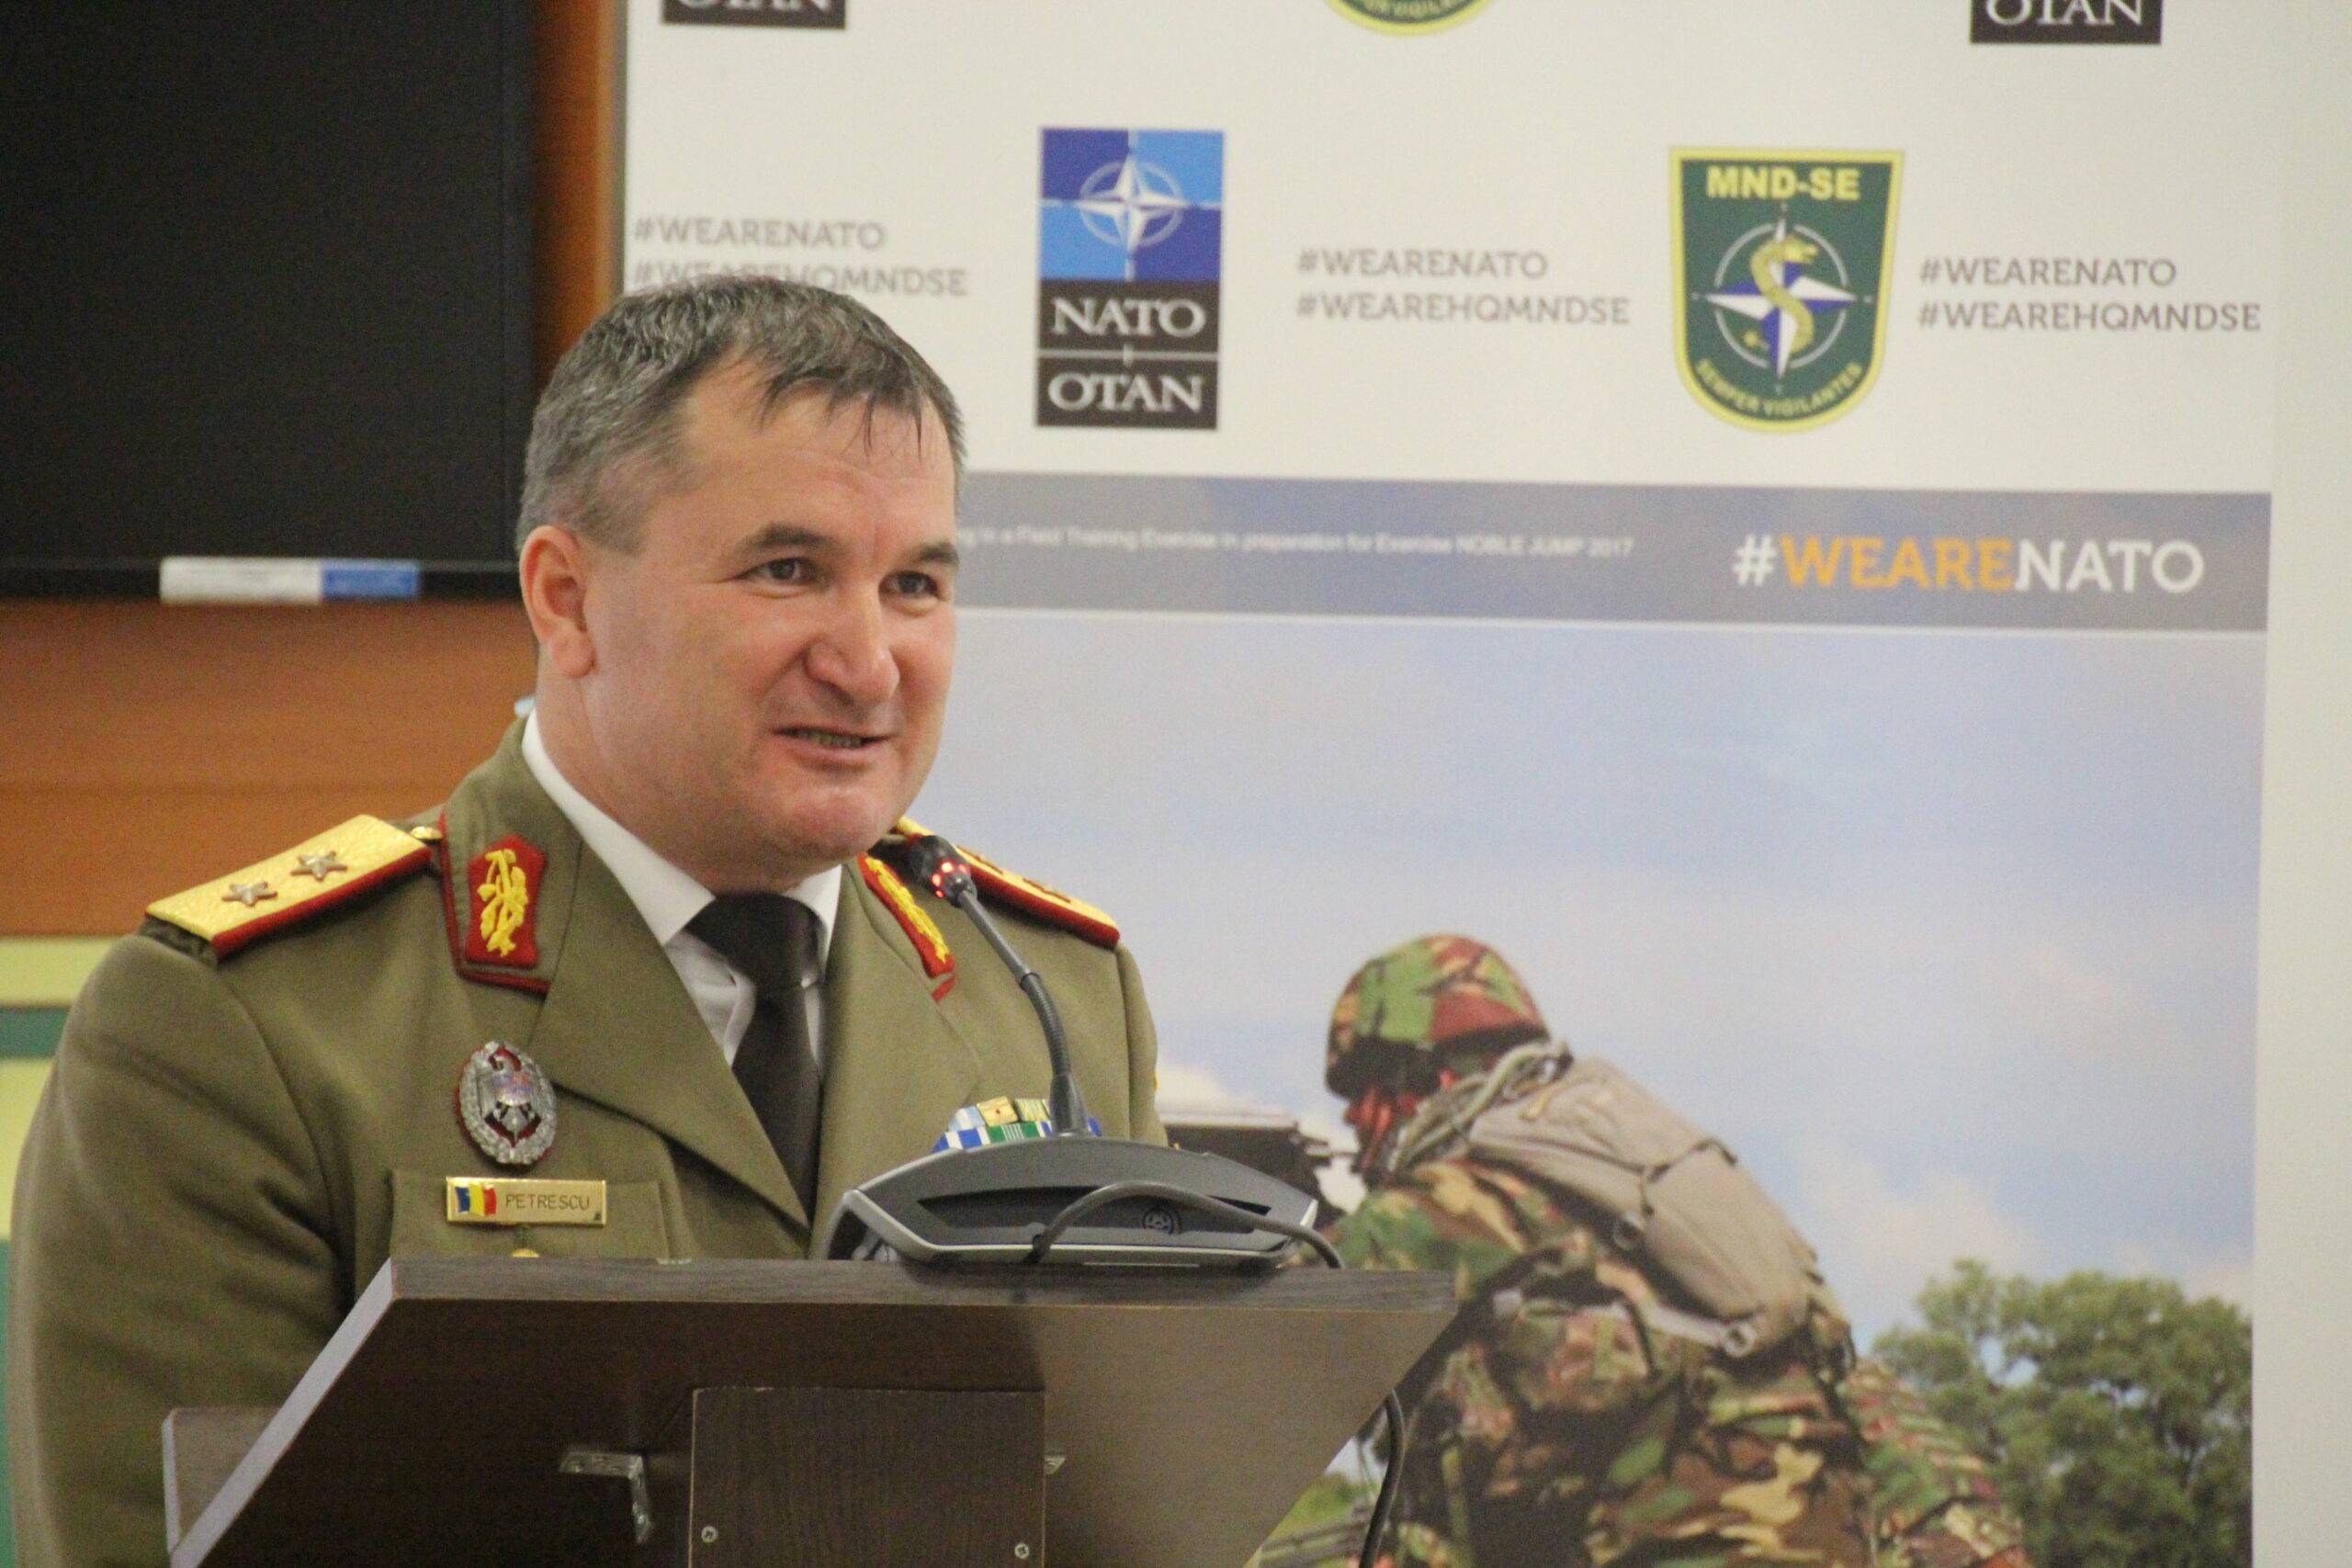 Şeful Statului Major al Apărării din Bulgaria, vizită de ultim moment în România